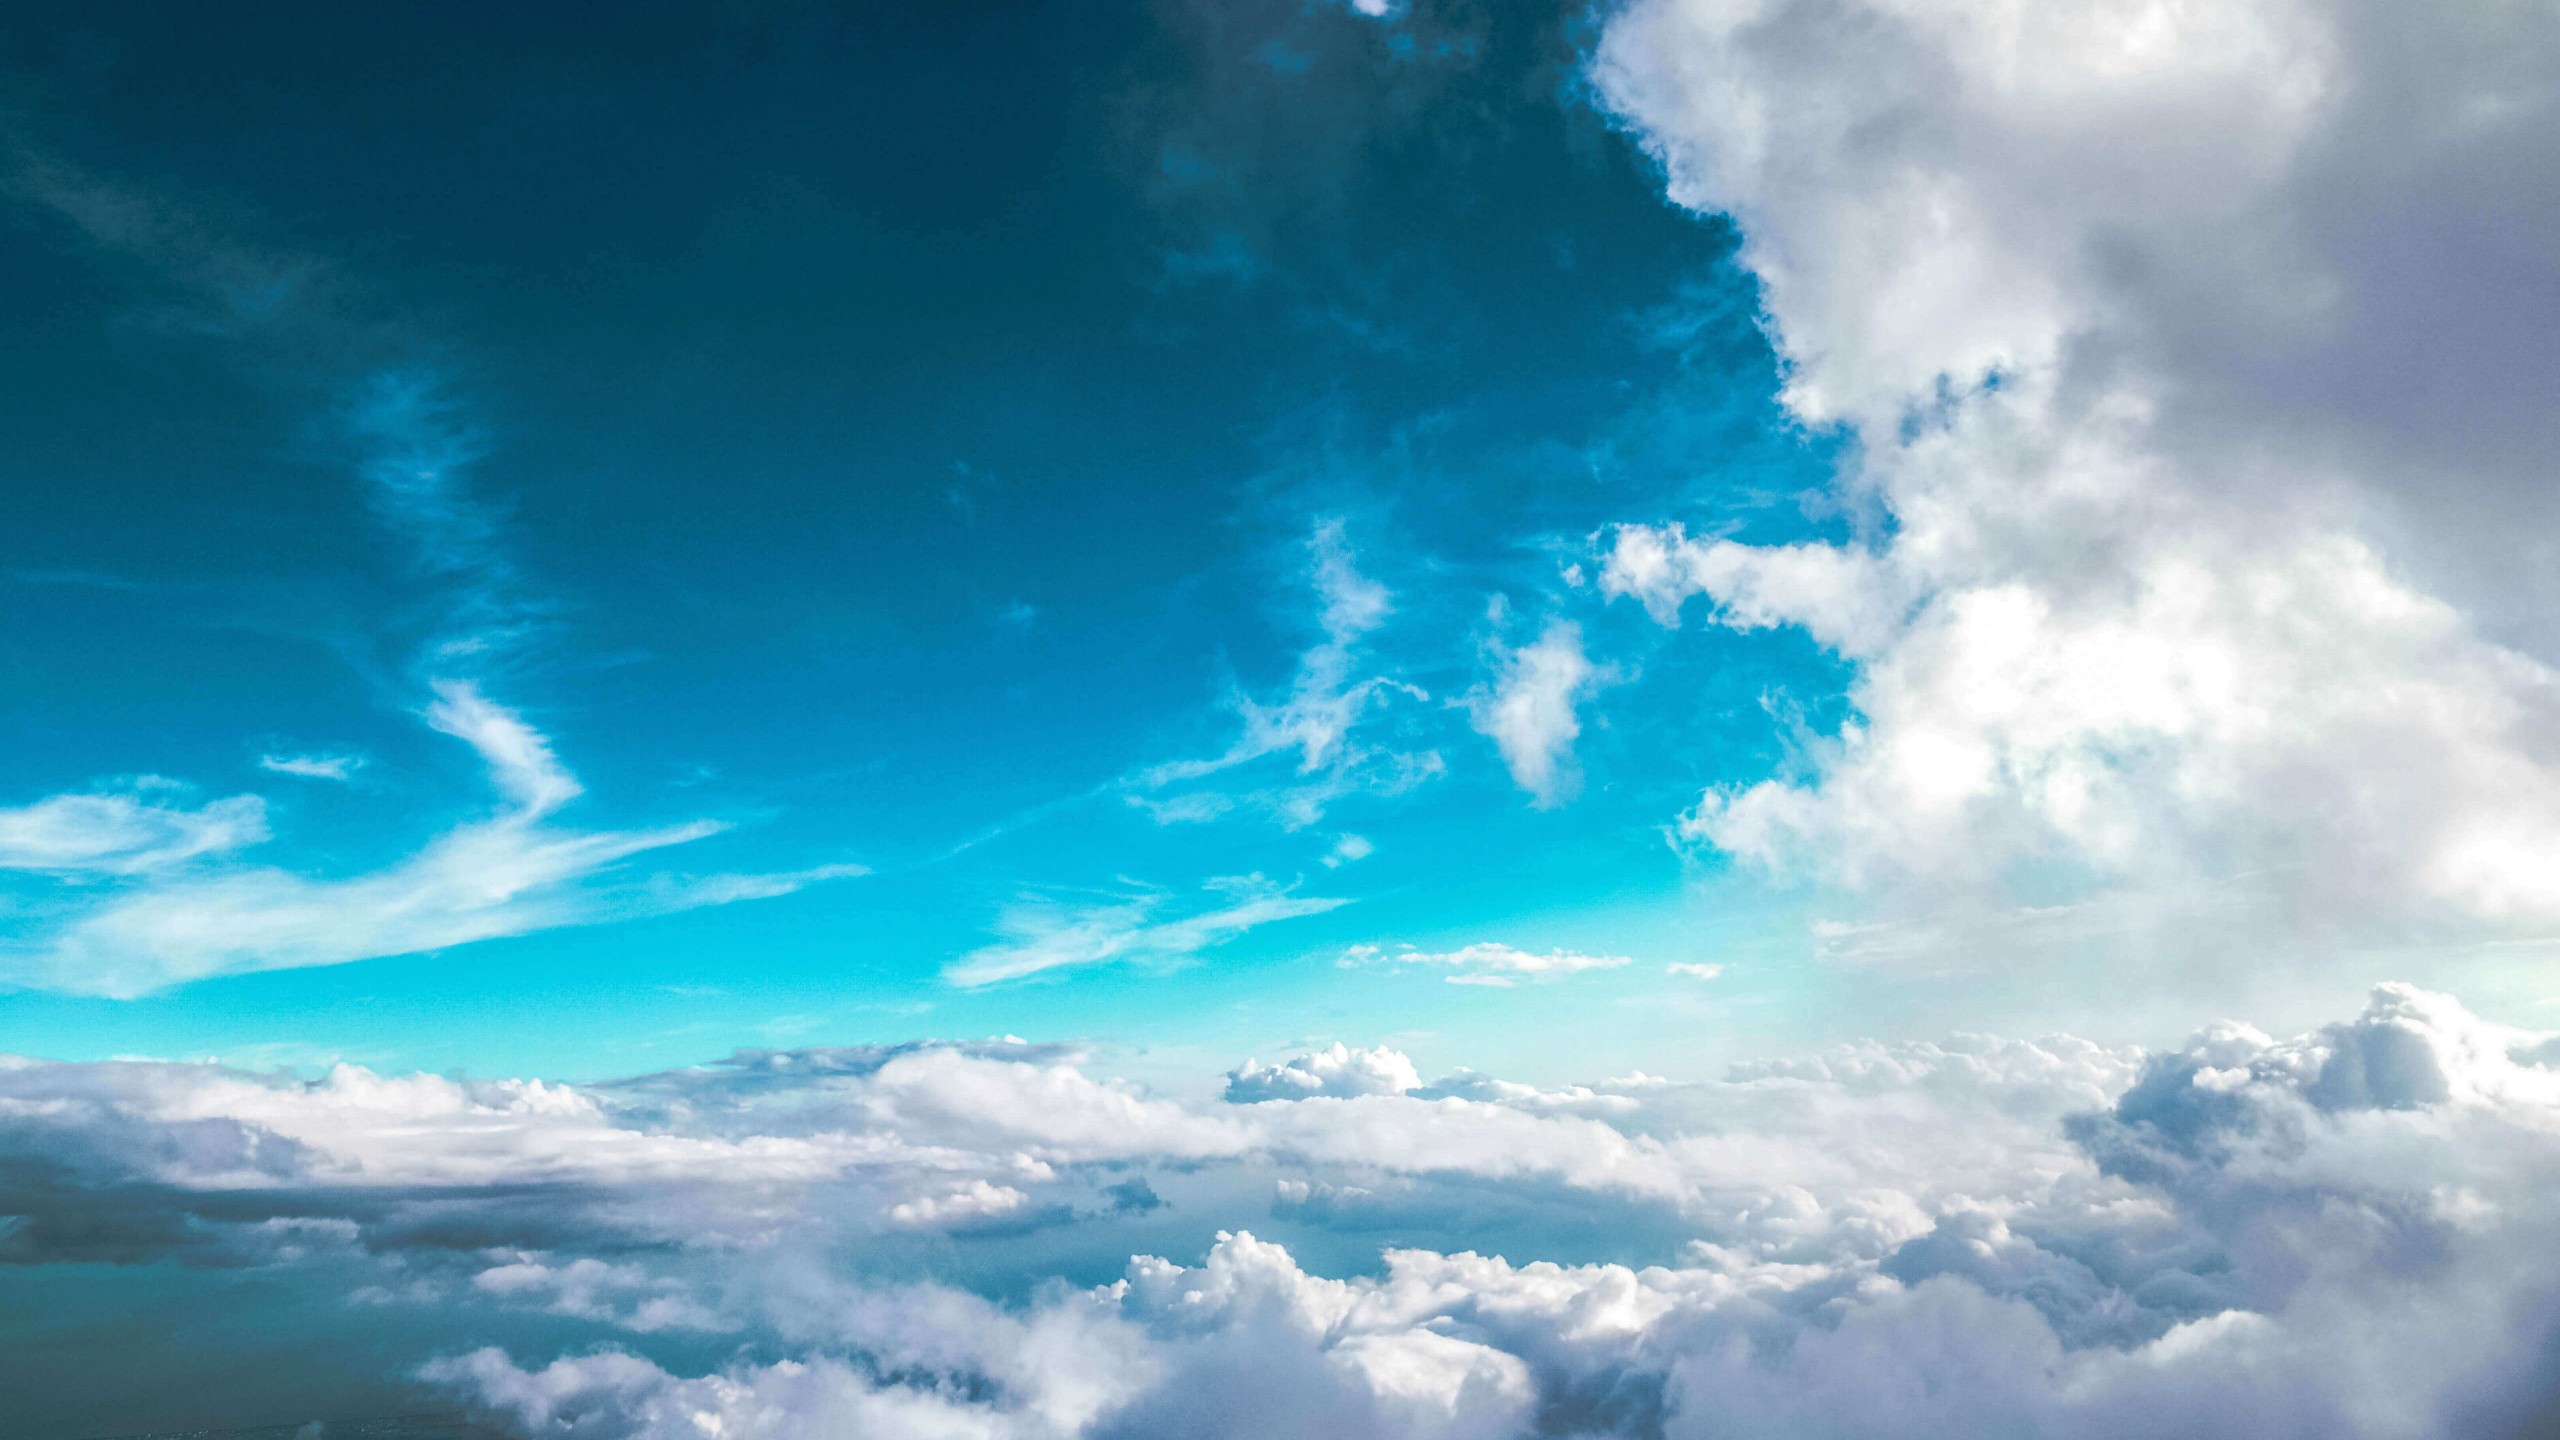 Cloudy Blue Sky Wallpaper for Desktop 2560x1440